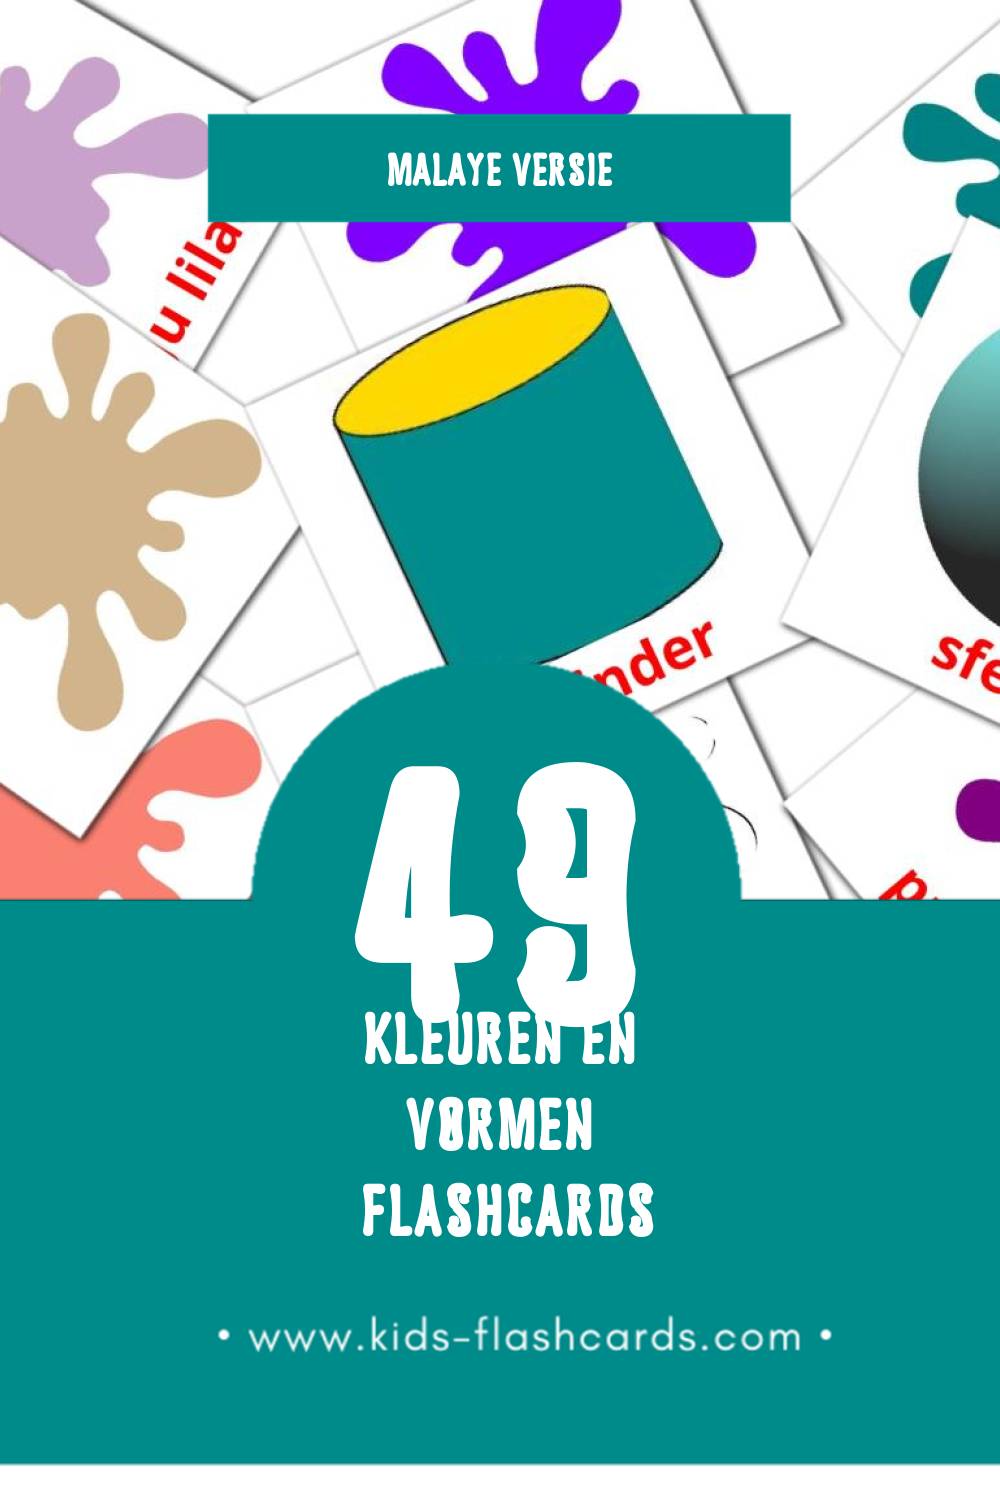 Visuele Warna dan Bentuk Flashcards voor Kleuters (49 kaarten in het Malay)